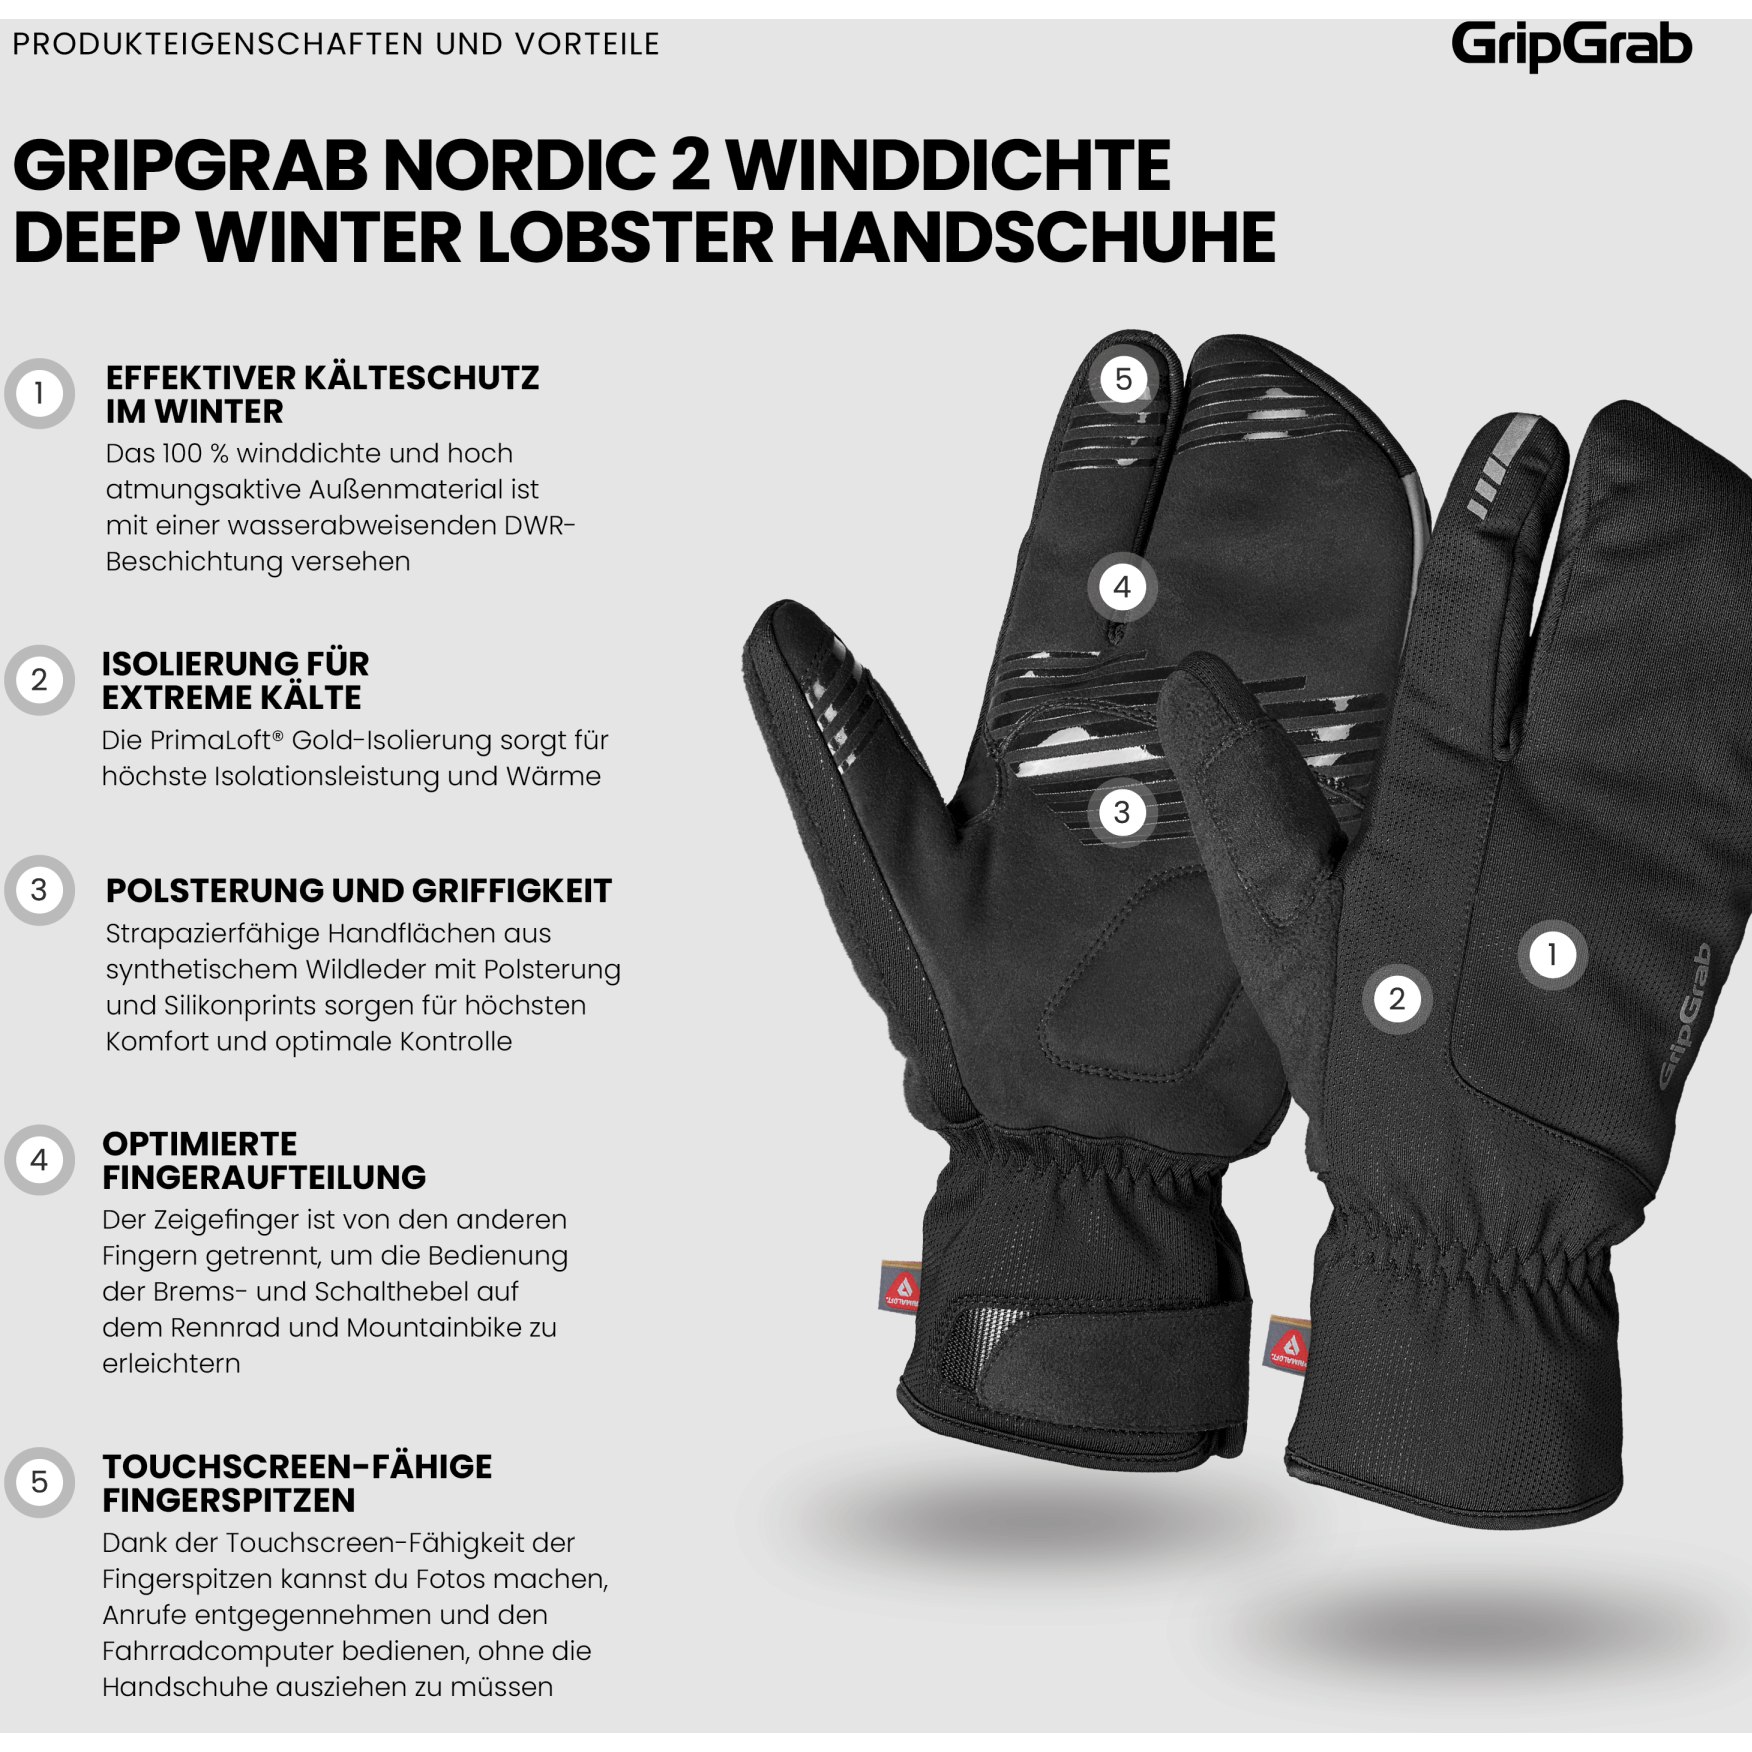 GripGrab Nordic 2 Hi-Vis Windproof Deep Winter Lobster Glov - M